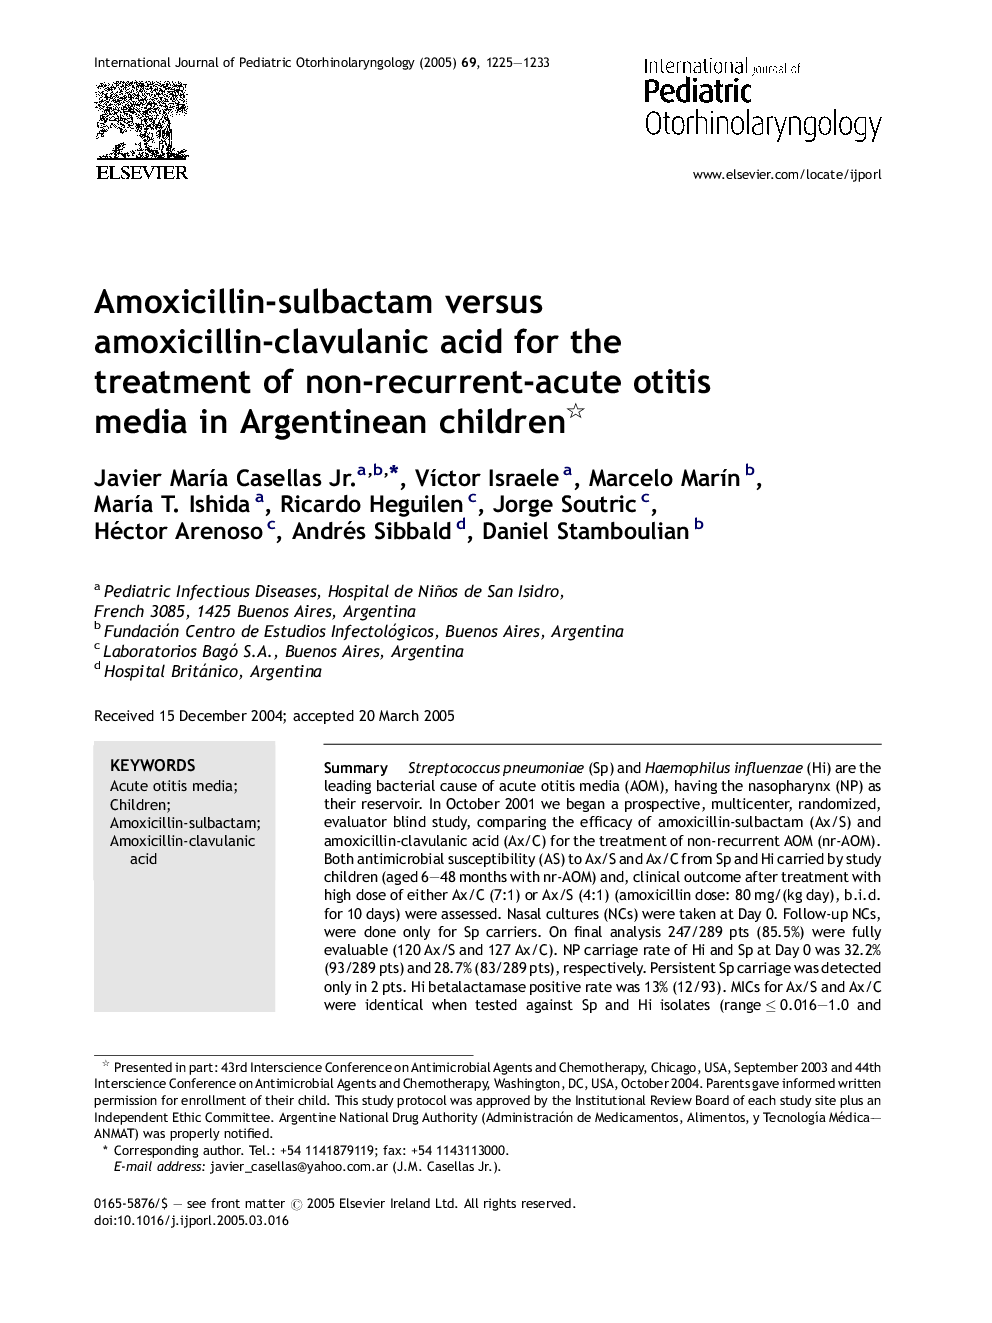 Amoxicillin-sulbactam versus amoxicillin-clavulanic acid for the treatment of non-recurrent-acute otitis media in Argentinean children